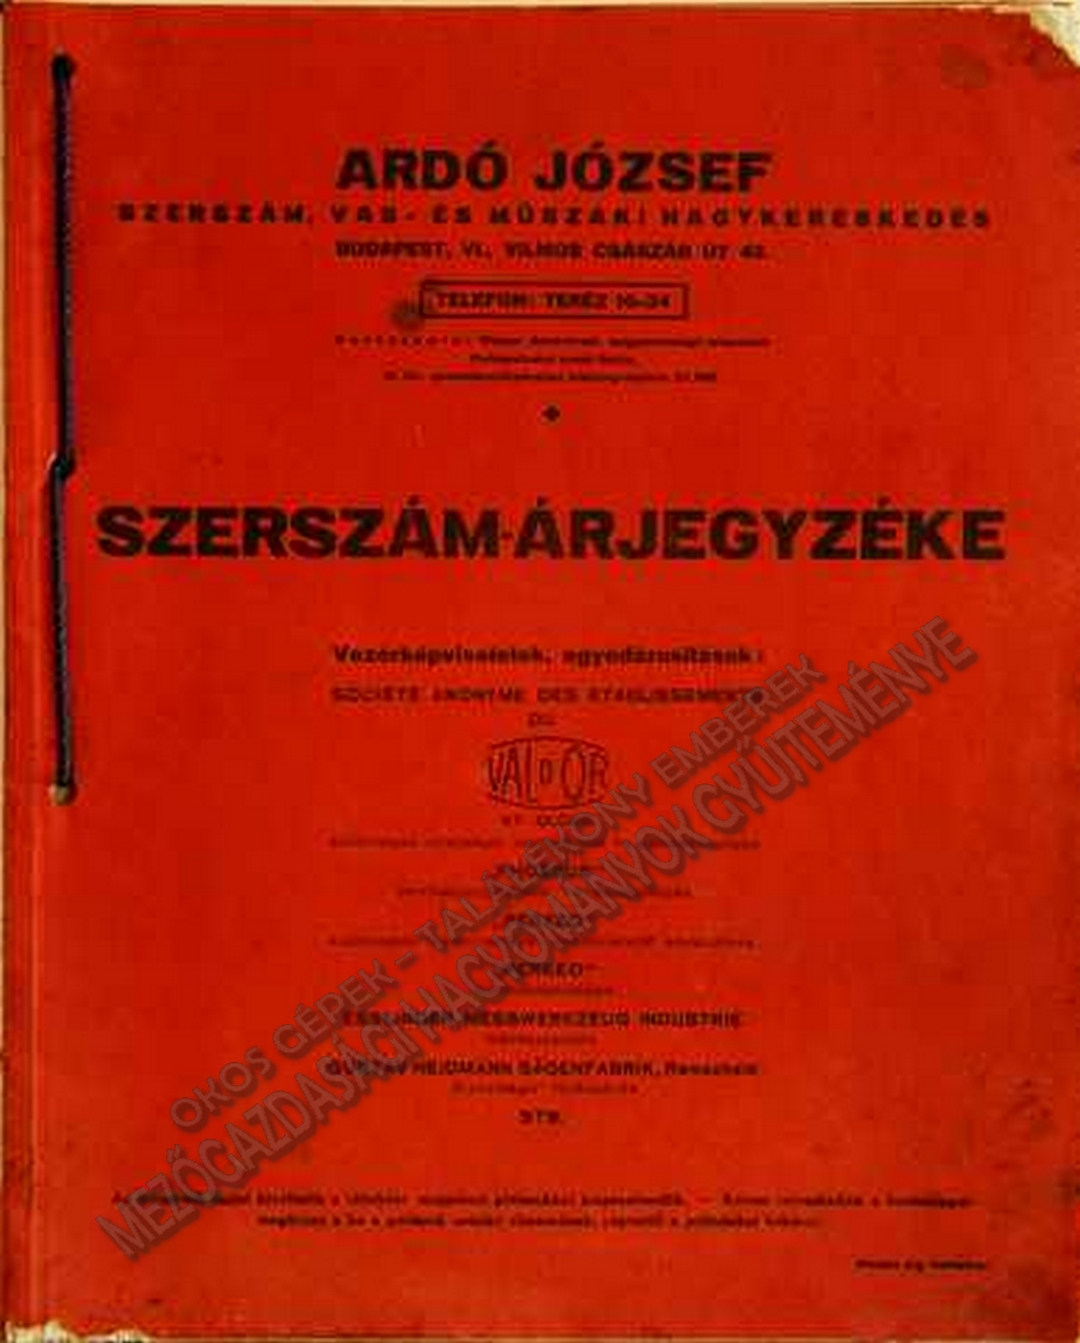 Ardó József - Szerszám-árjegyzéke